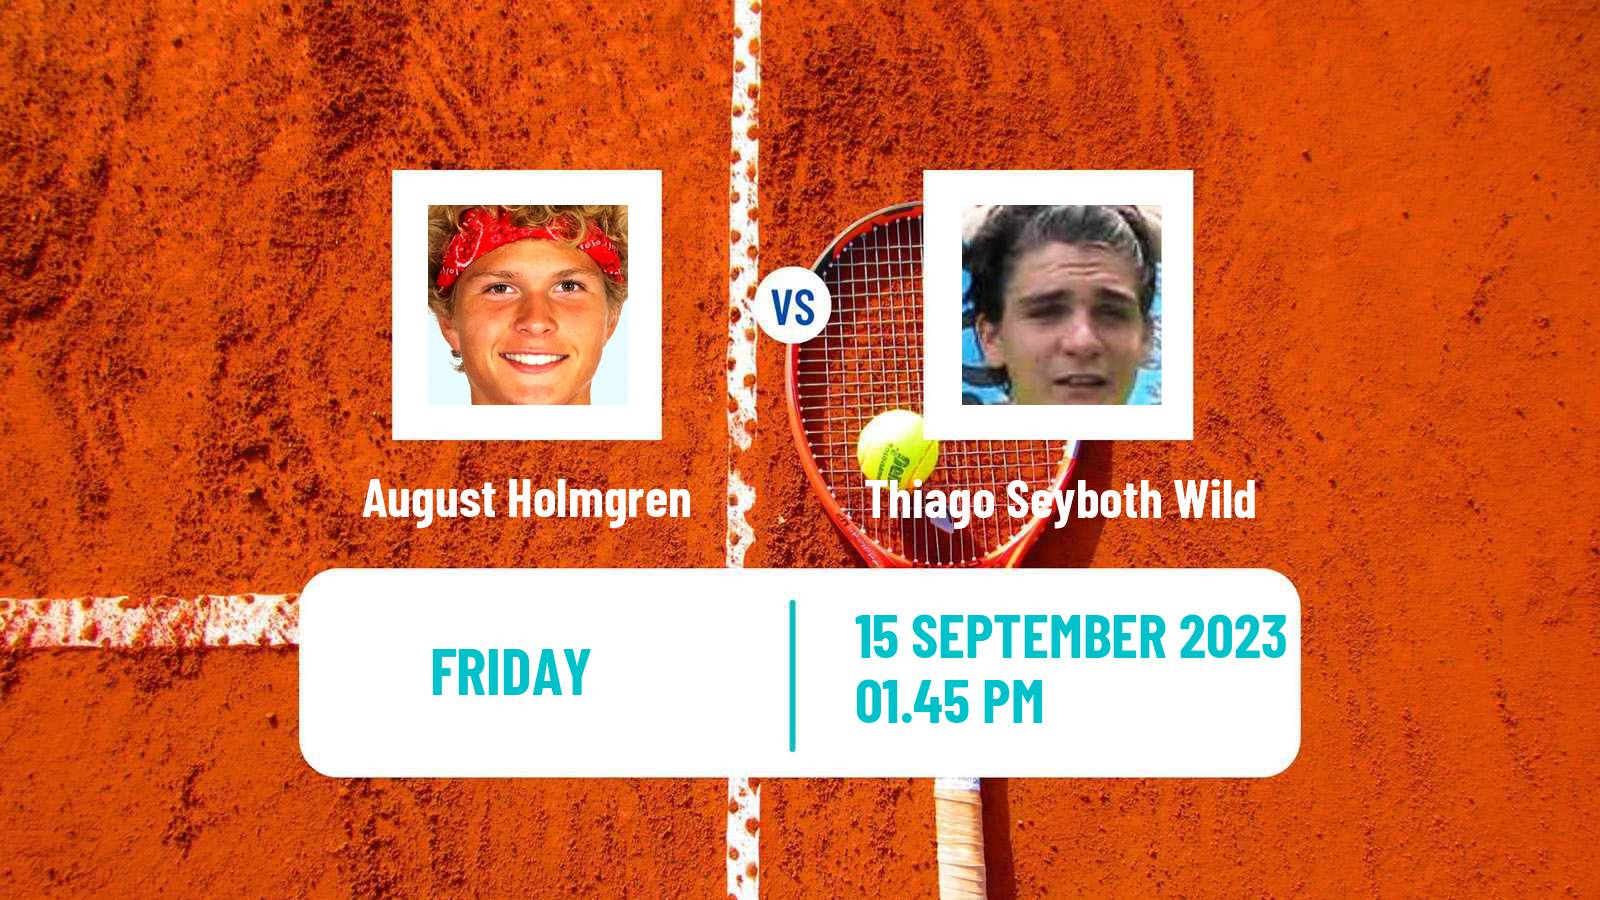 Tennis Davis Cup World Group I August Holmgren - Thiago Seyboth Wild